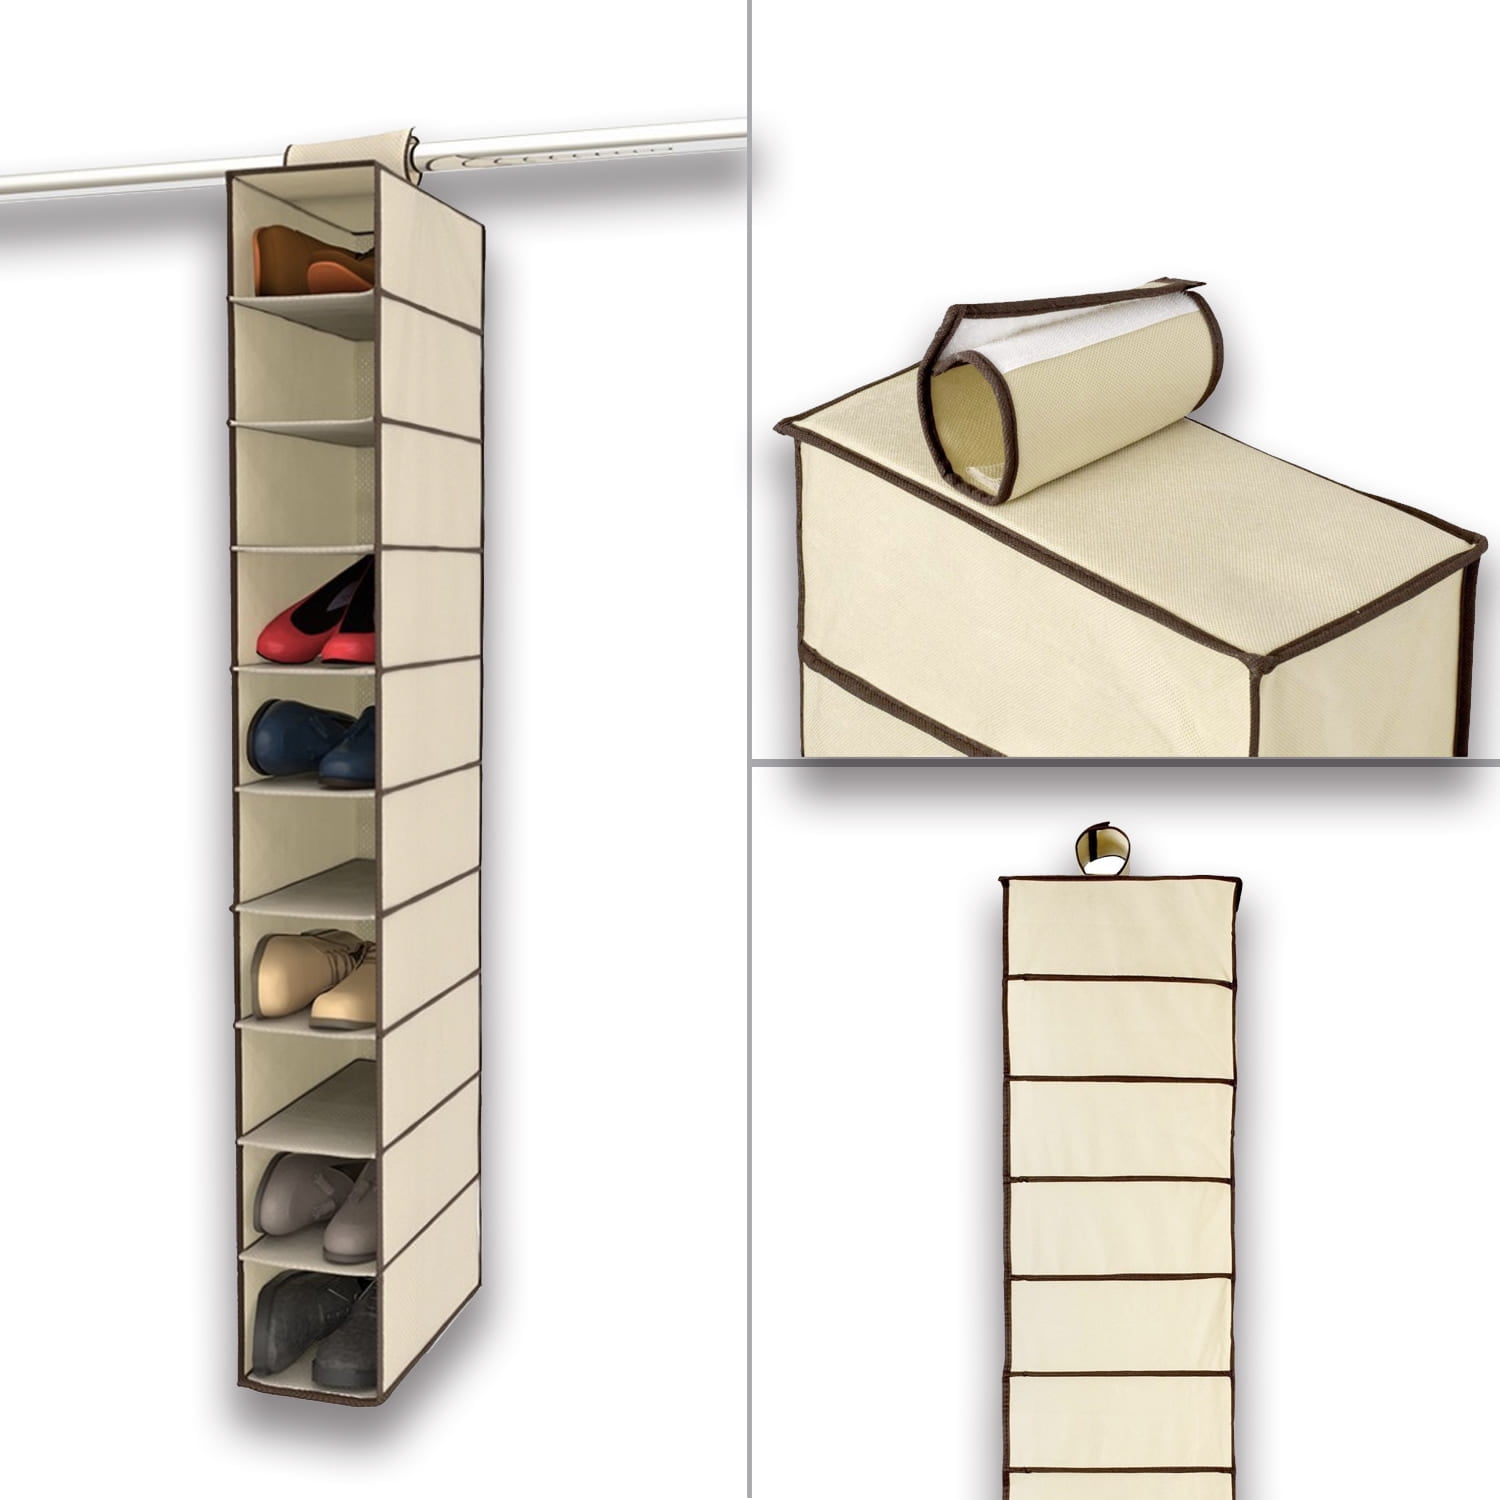 Zober 10-Shelf Hanging Shoe Organizer, Shoe Holder for Closet - 10 Mesh Pockets